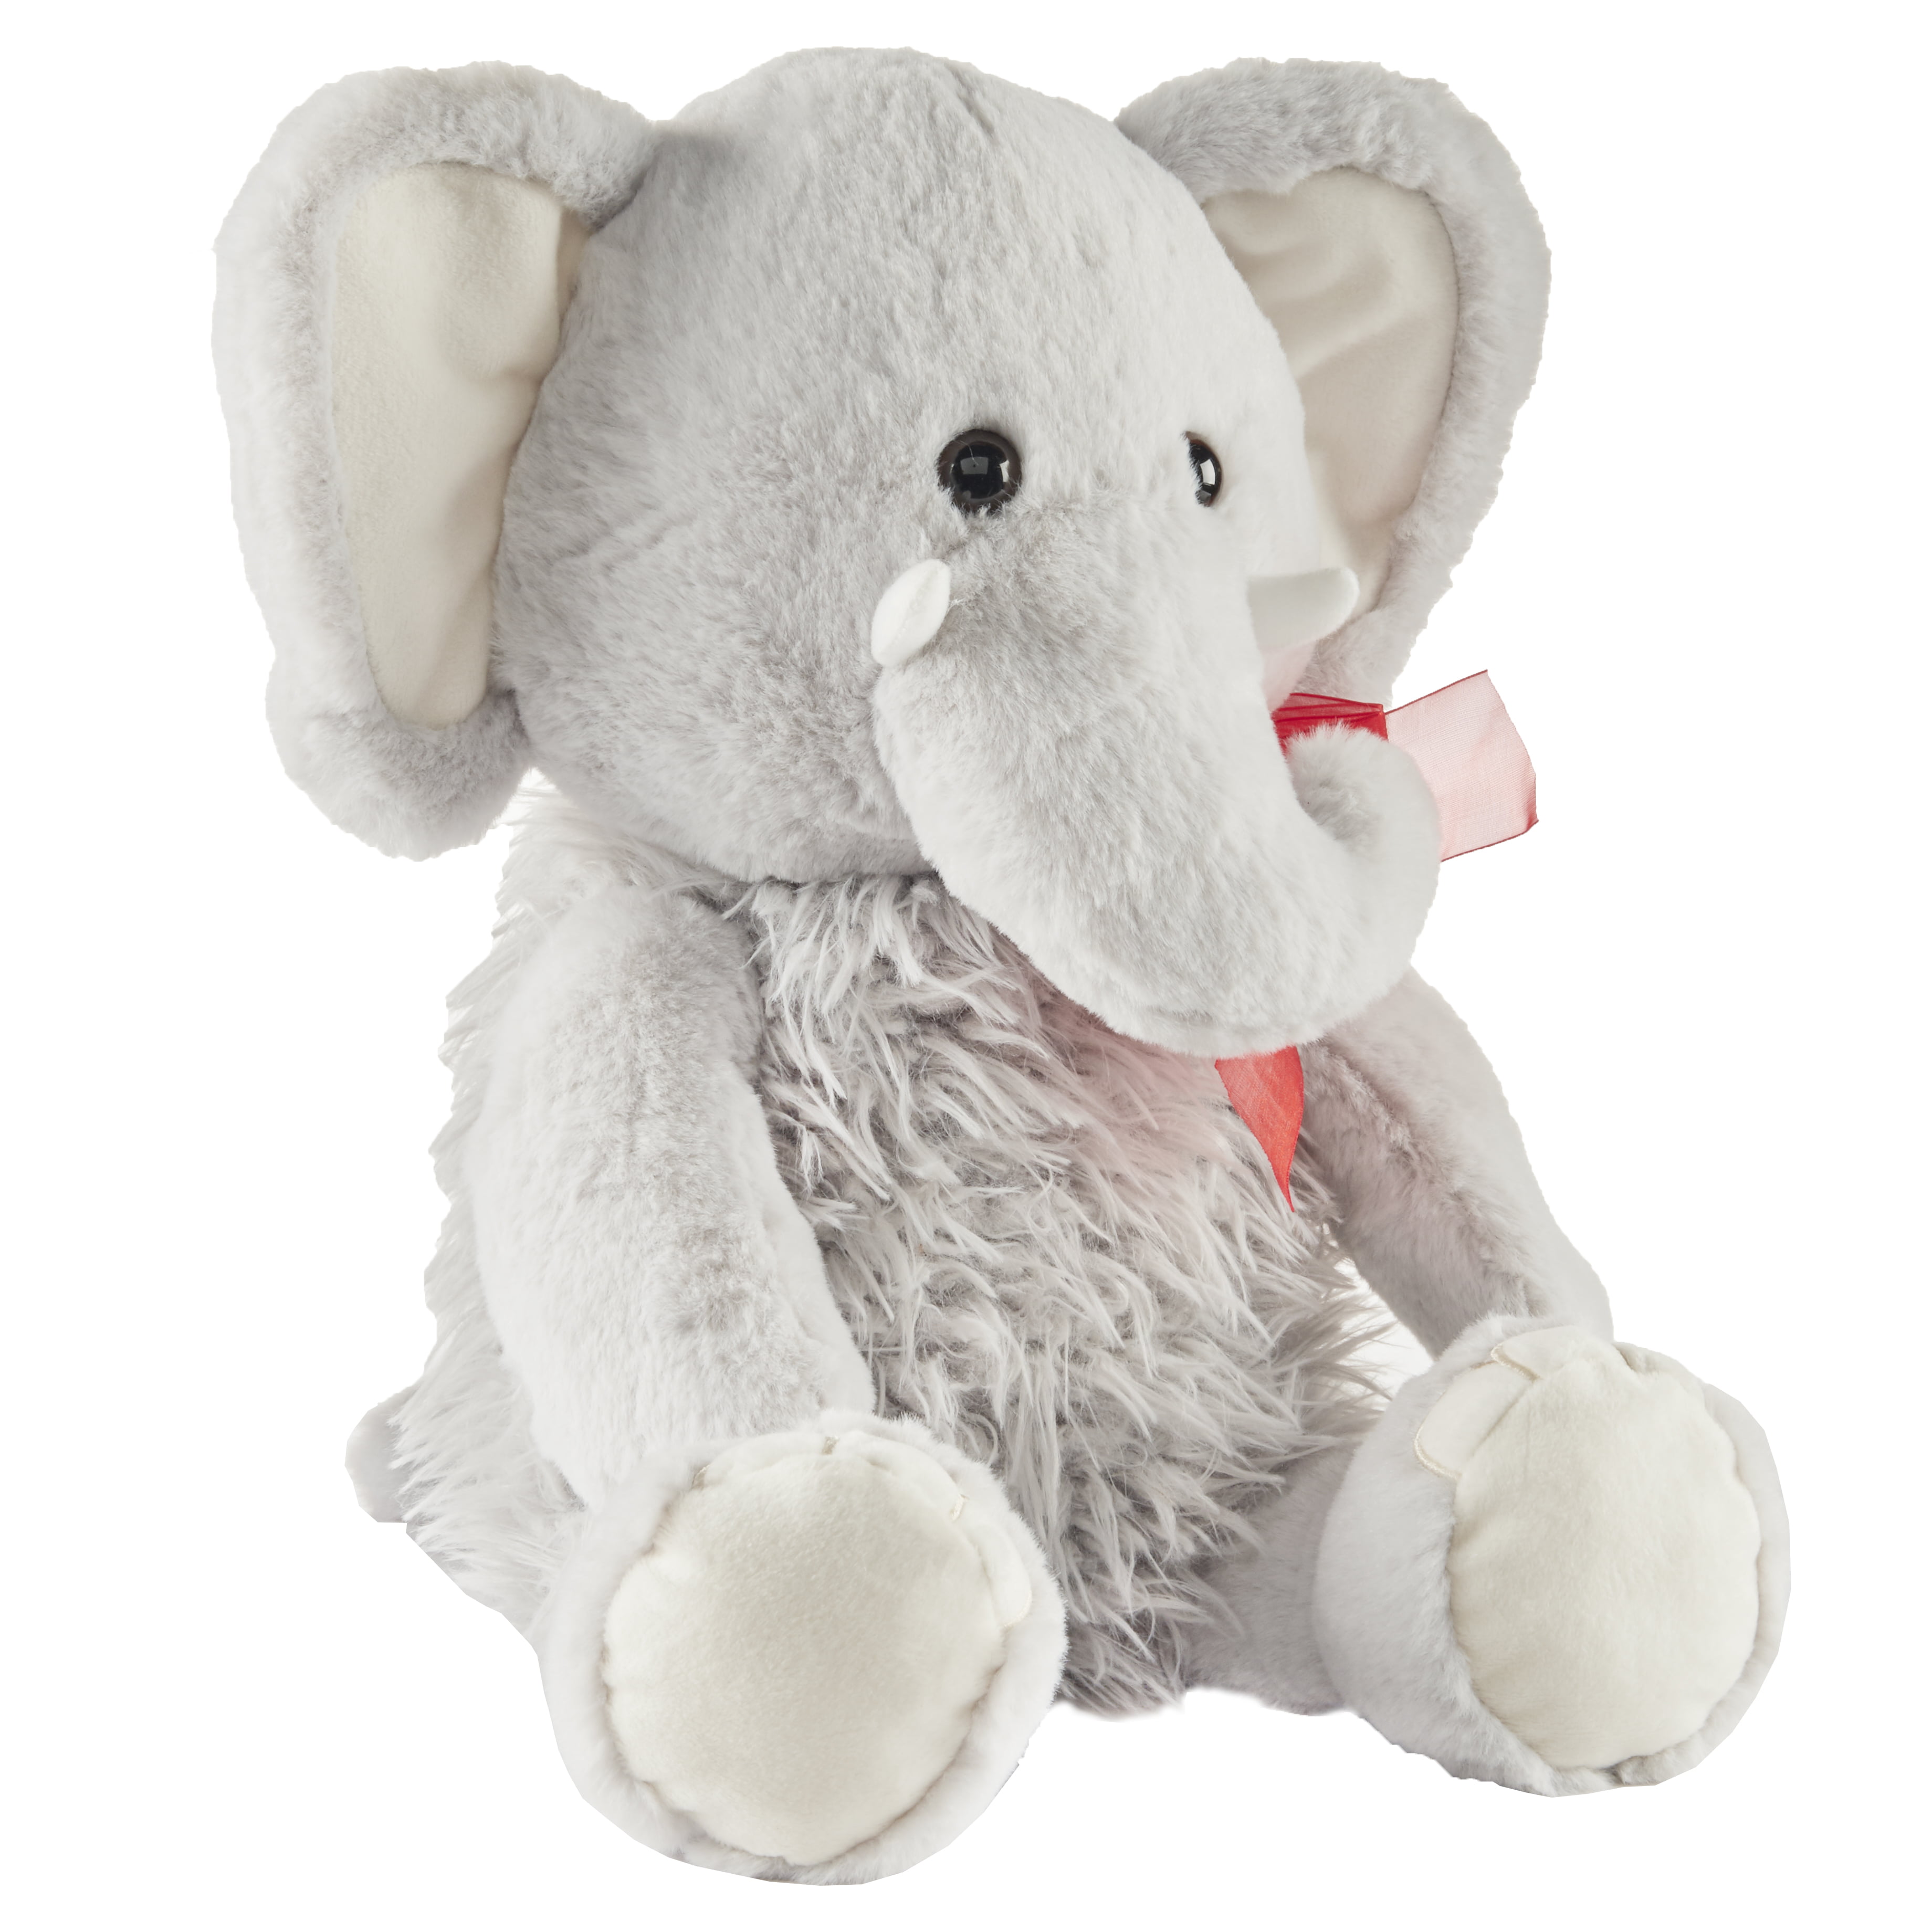 elephant stuffed animal walmart